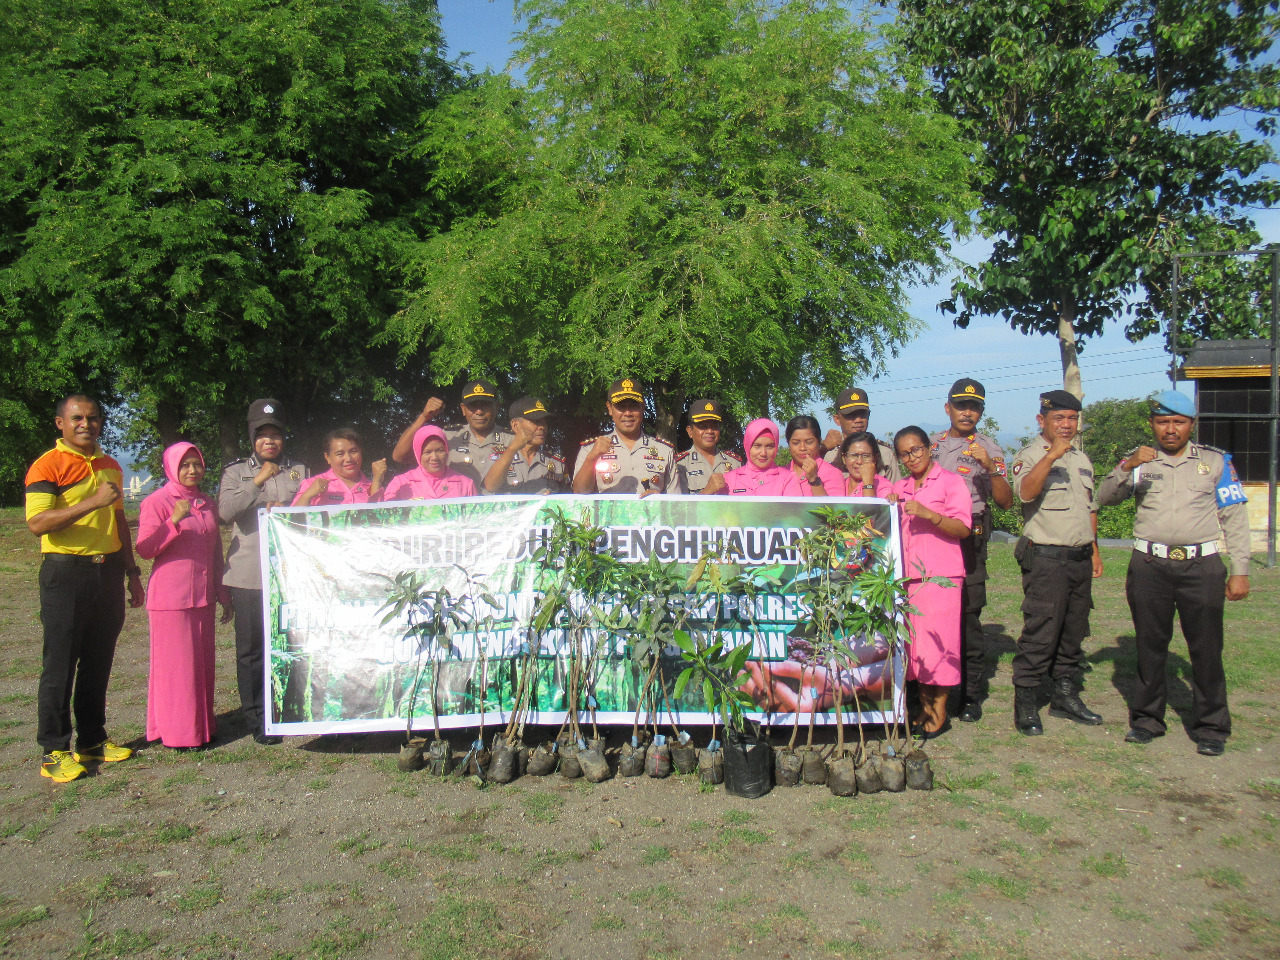 Gerakan Polri Peduli Penghijauan, Polres Ende Melaksanakan Penanaman Pohon